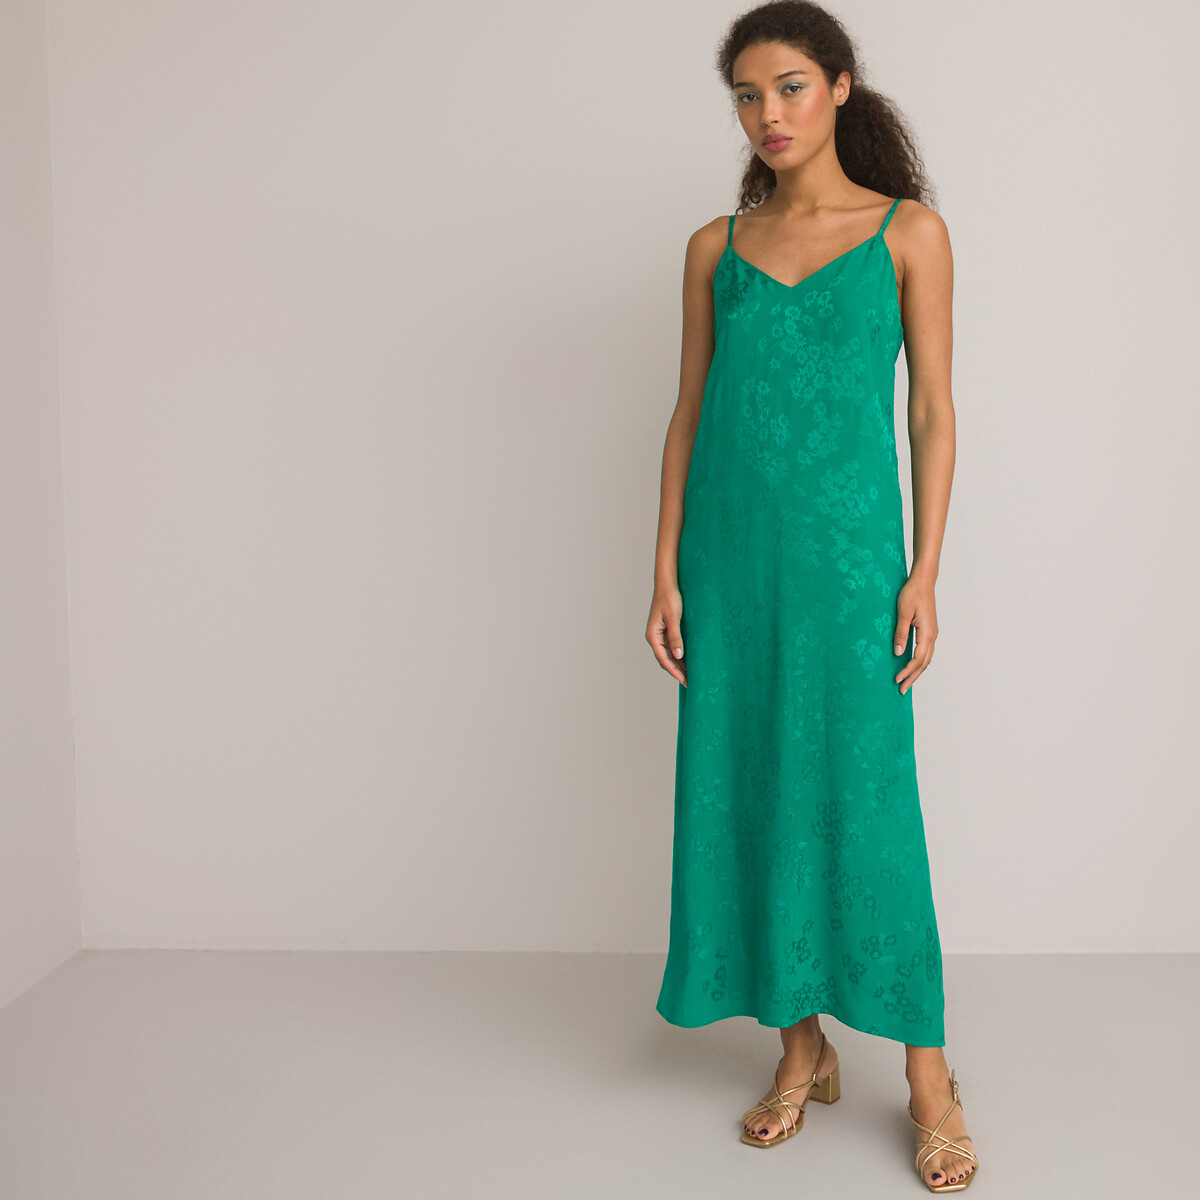 Платье Длинное в стиле нижнего белья тонкие бретели 48 зеленый